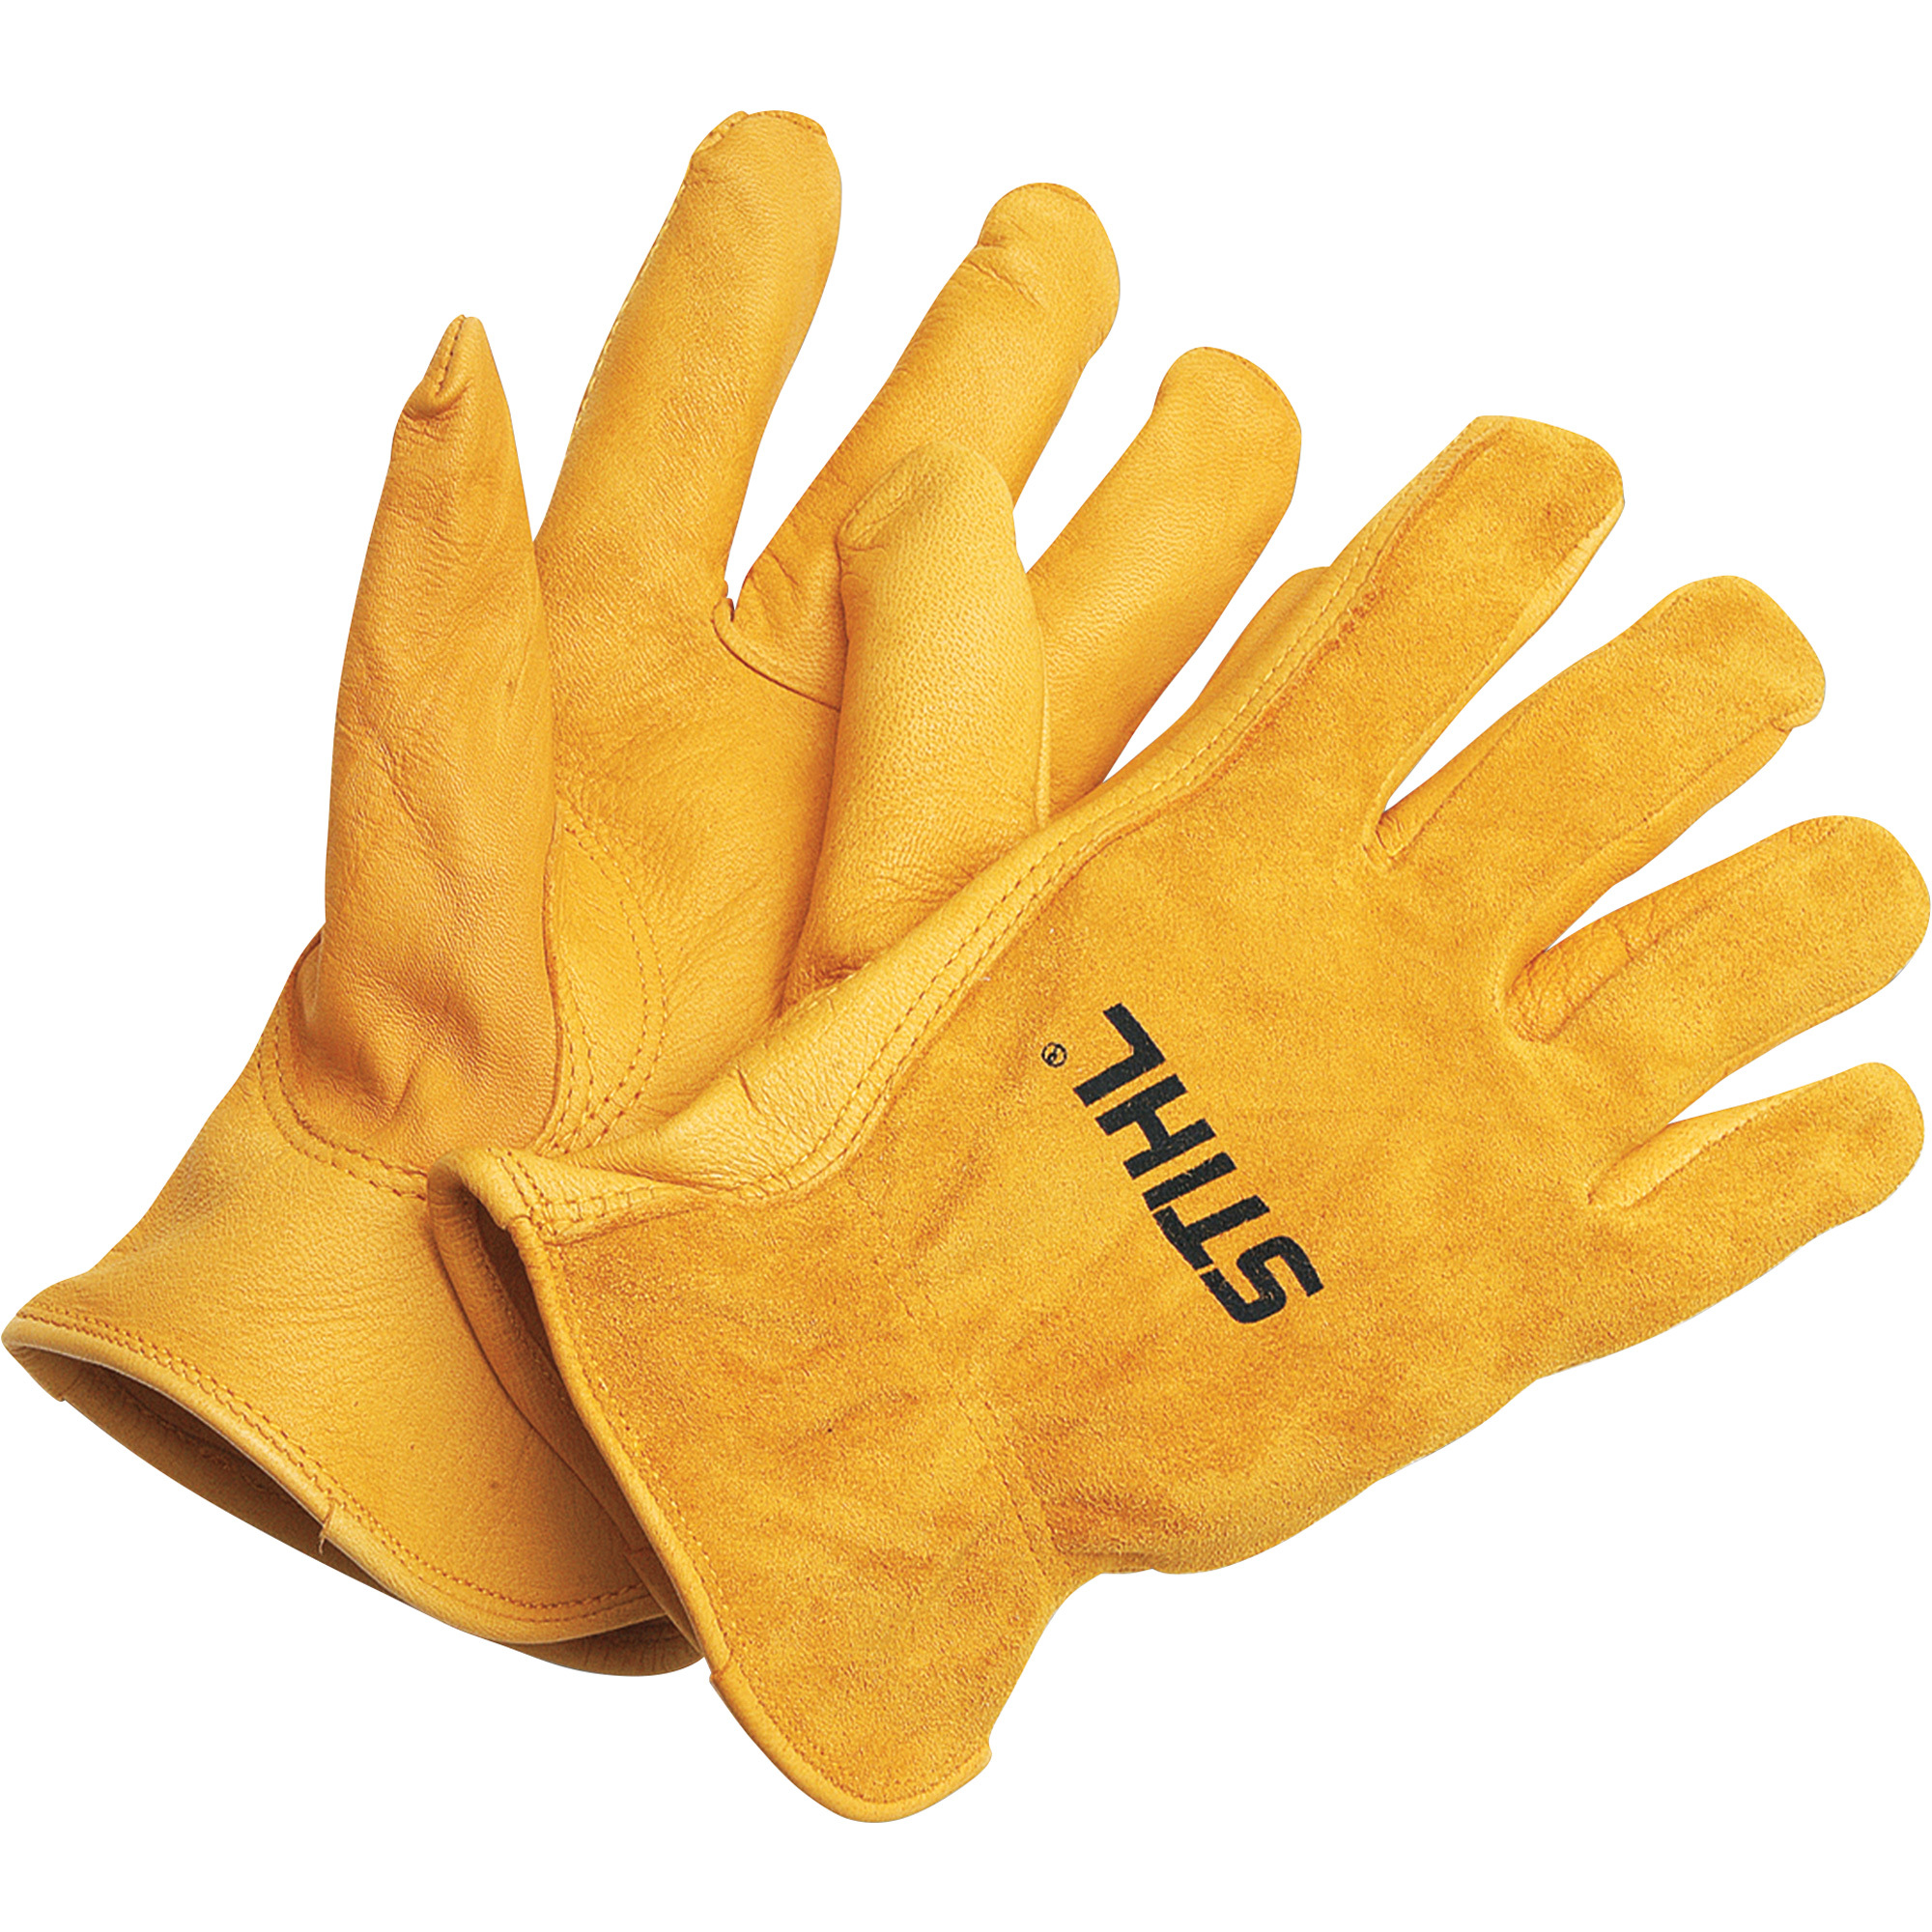 STIHL Landscaper Gloves, L, Model 0000 886 1105